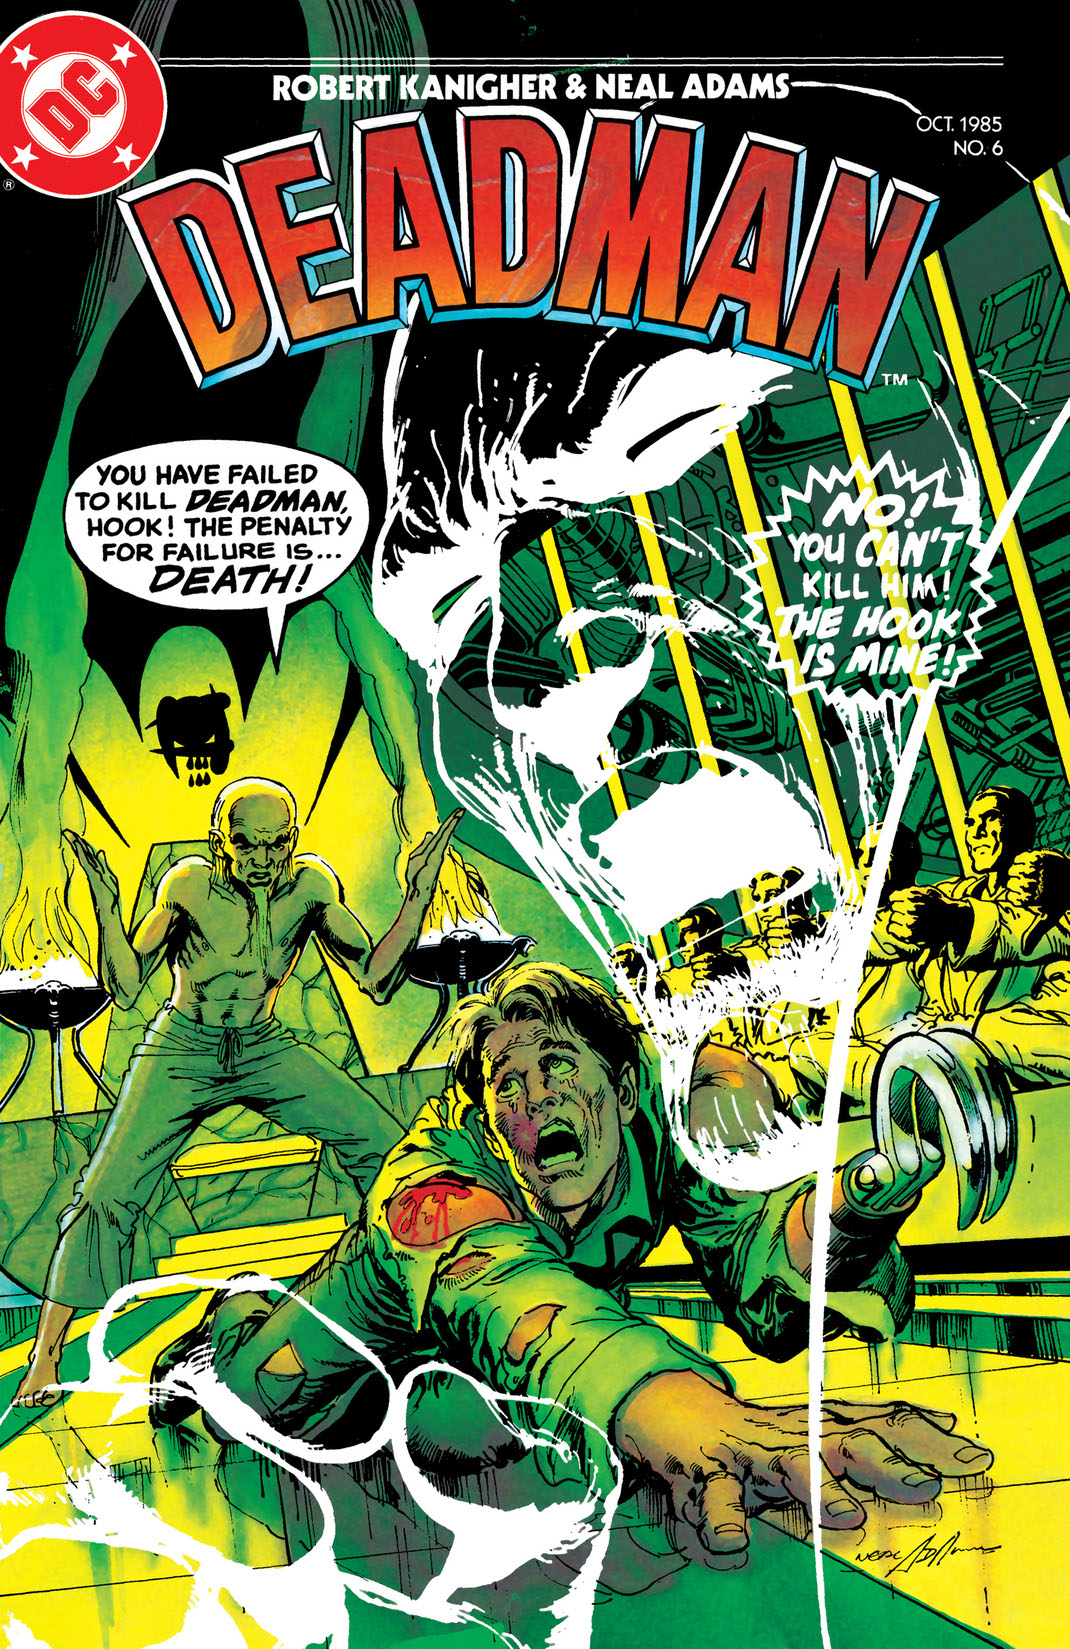 Deadman (1985-1985) #6 preview images